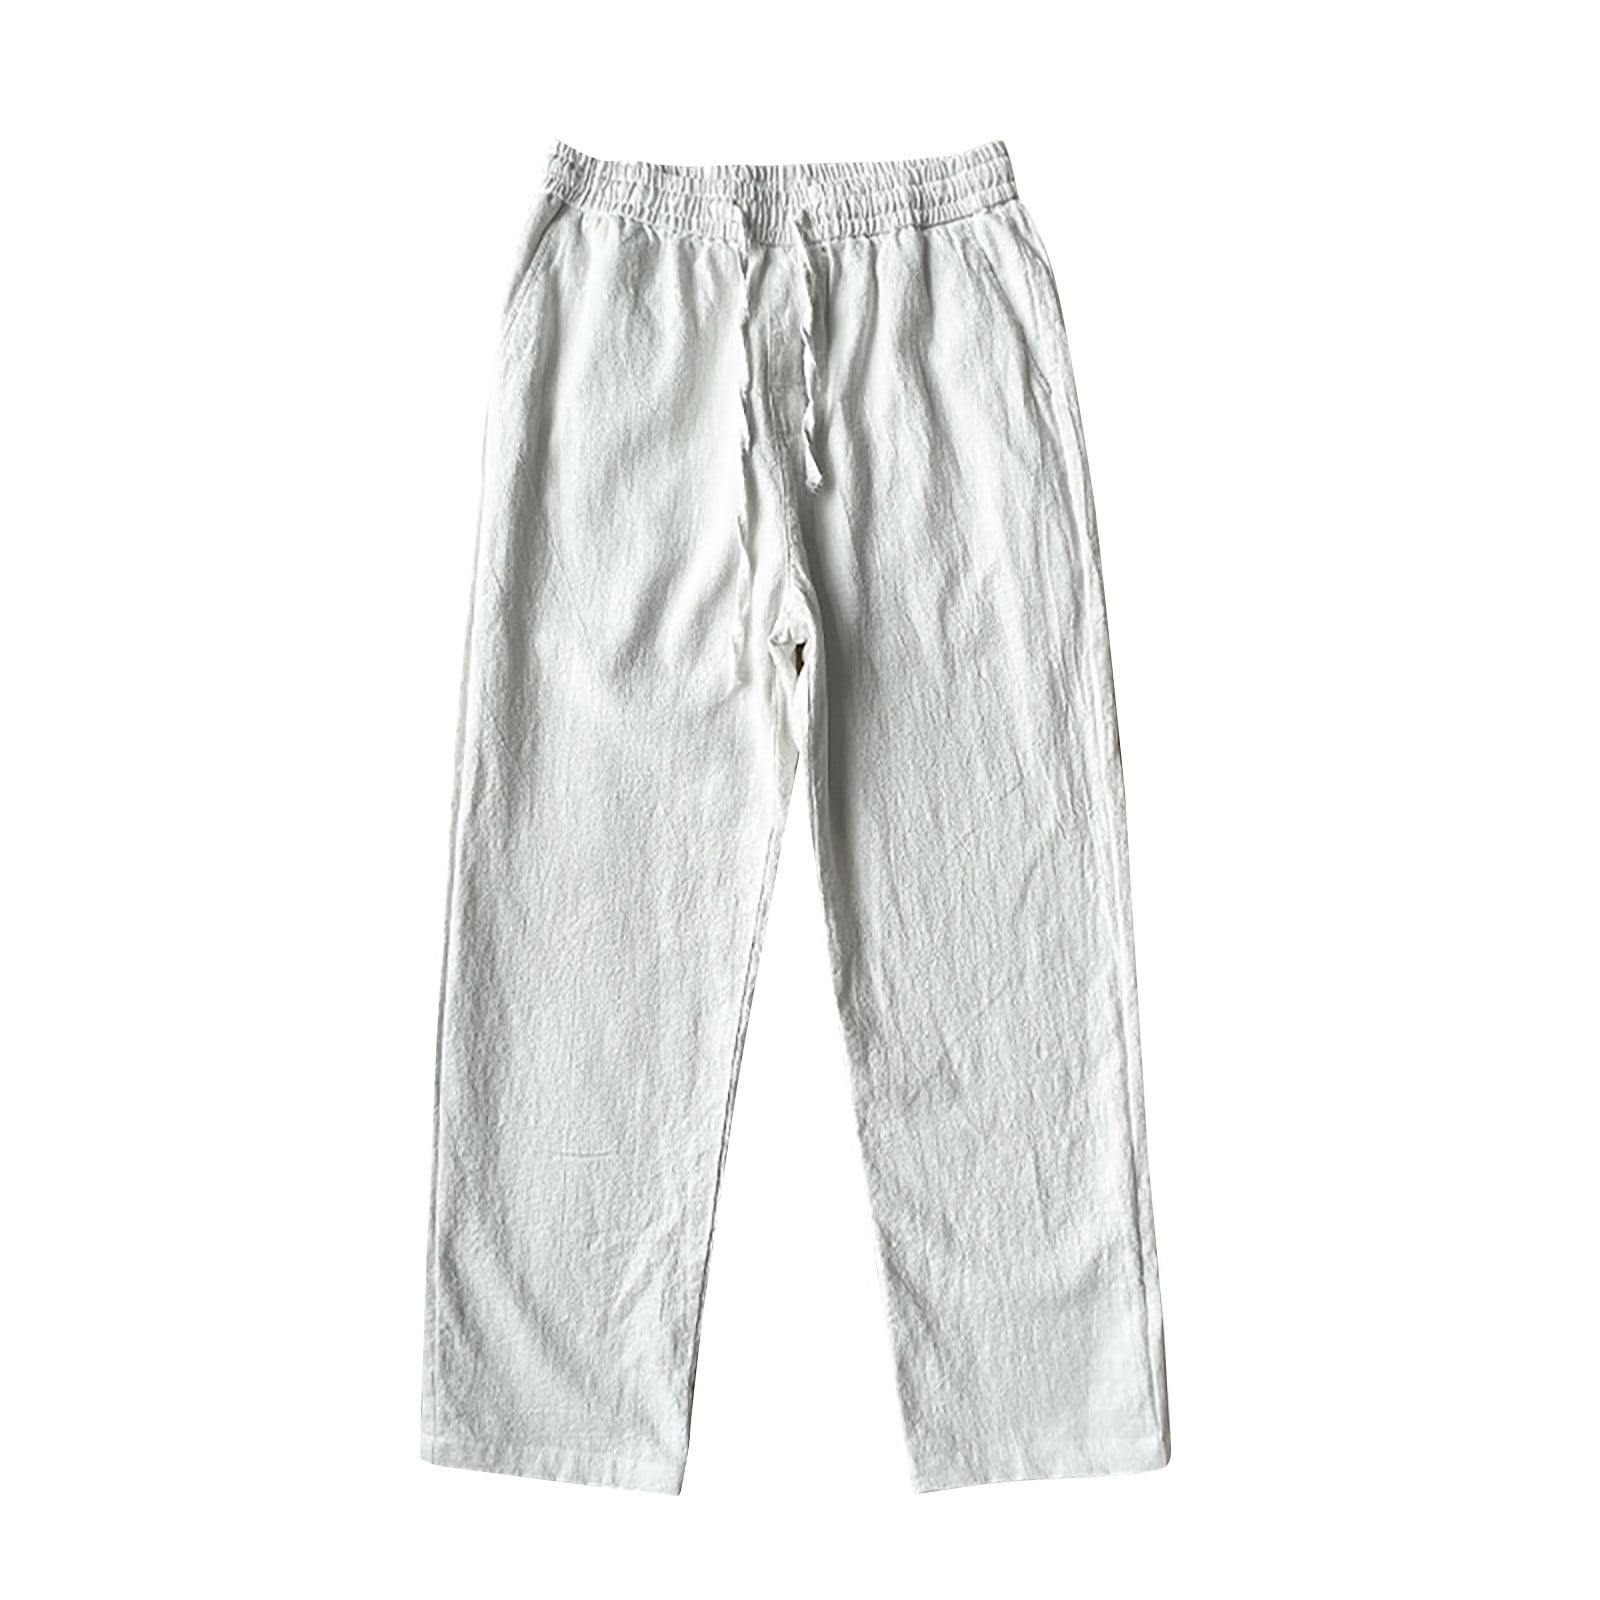 YLSDL Men's Nine-Quarter Pants Straight Leg Cotton Drawstring Trousers ...